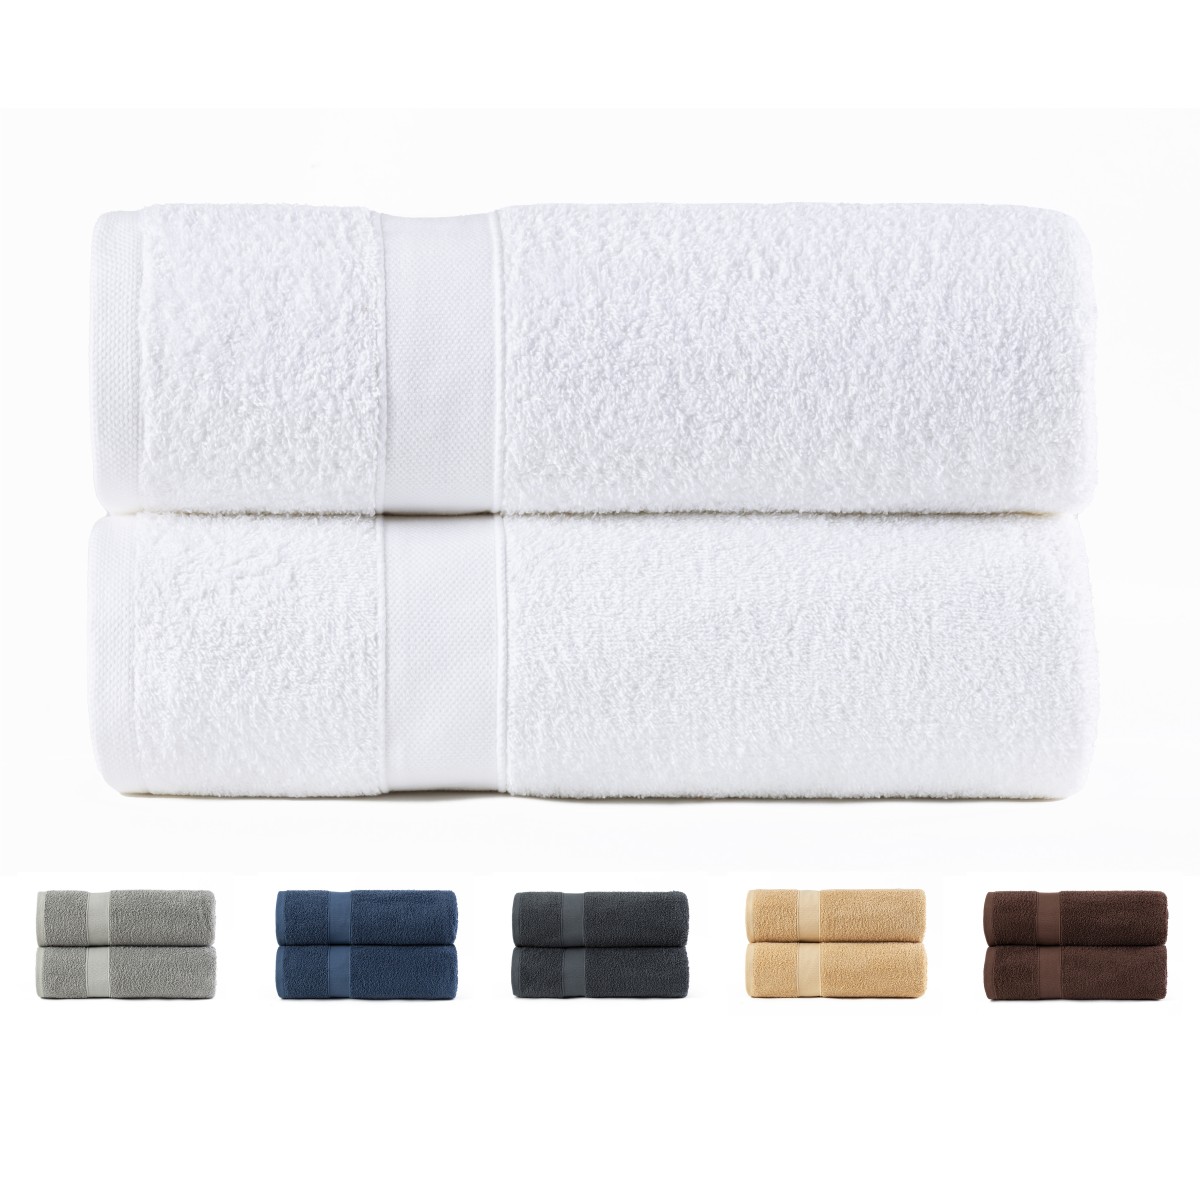  SENNIAN Toalla de baño, juego de toallas de baño 100% algodón,  1 toalla de baño grande, 1 toalla de mano, 1 toallita. Calidad de hotel  para baño altamente absorbente, color 6